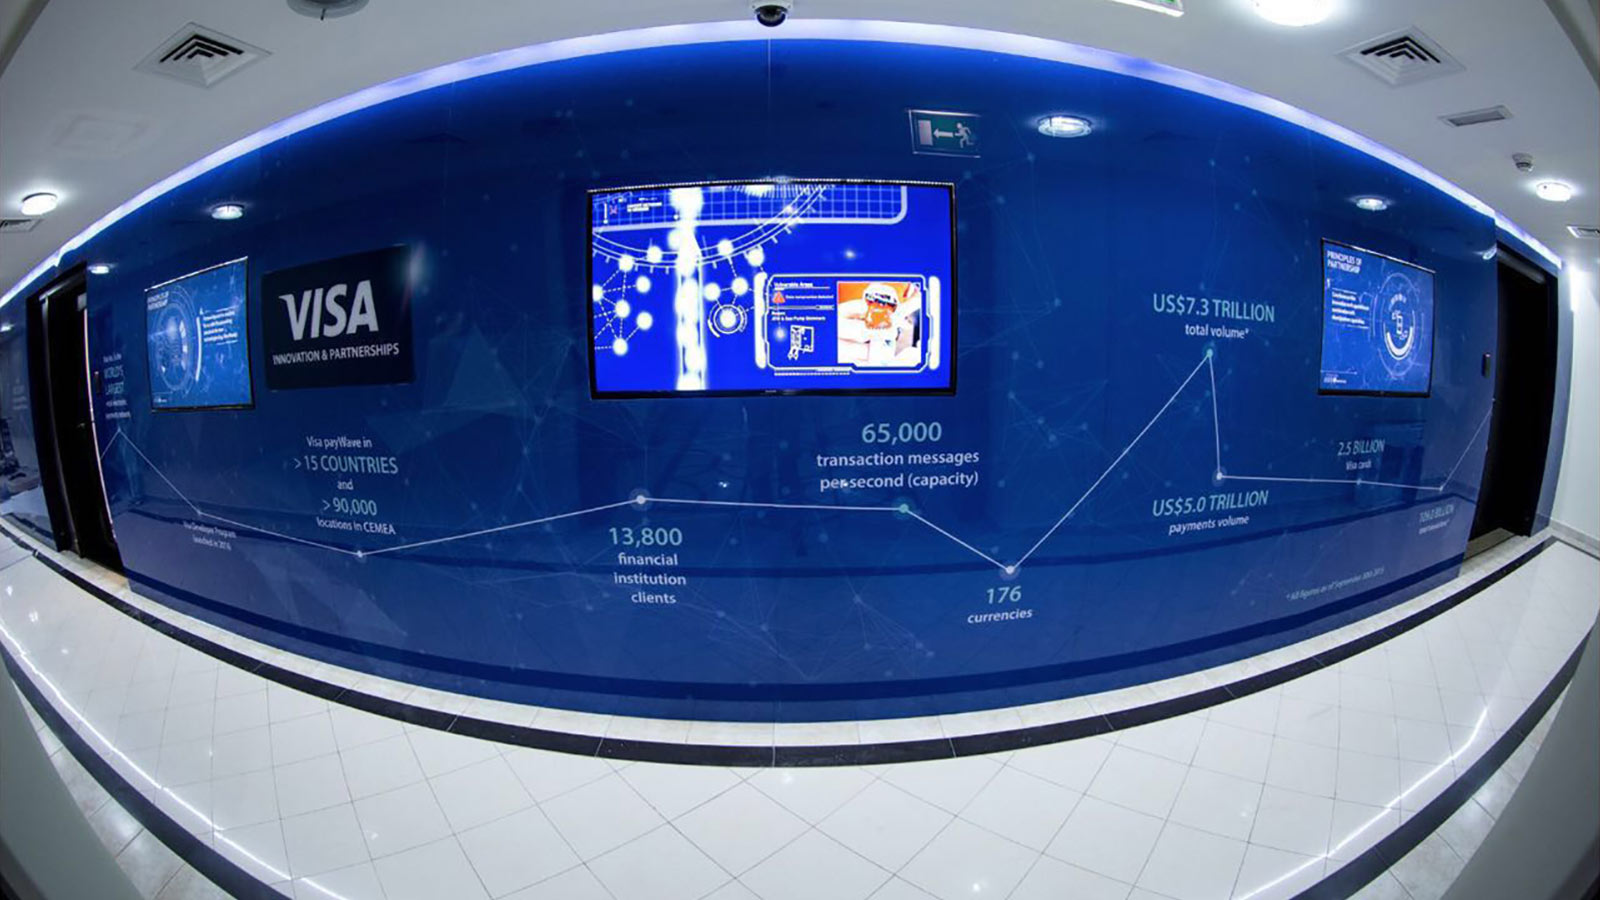 Visa Innovation Center Dubai.